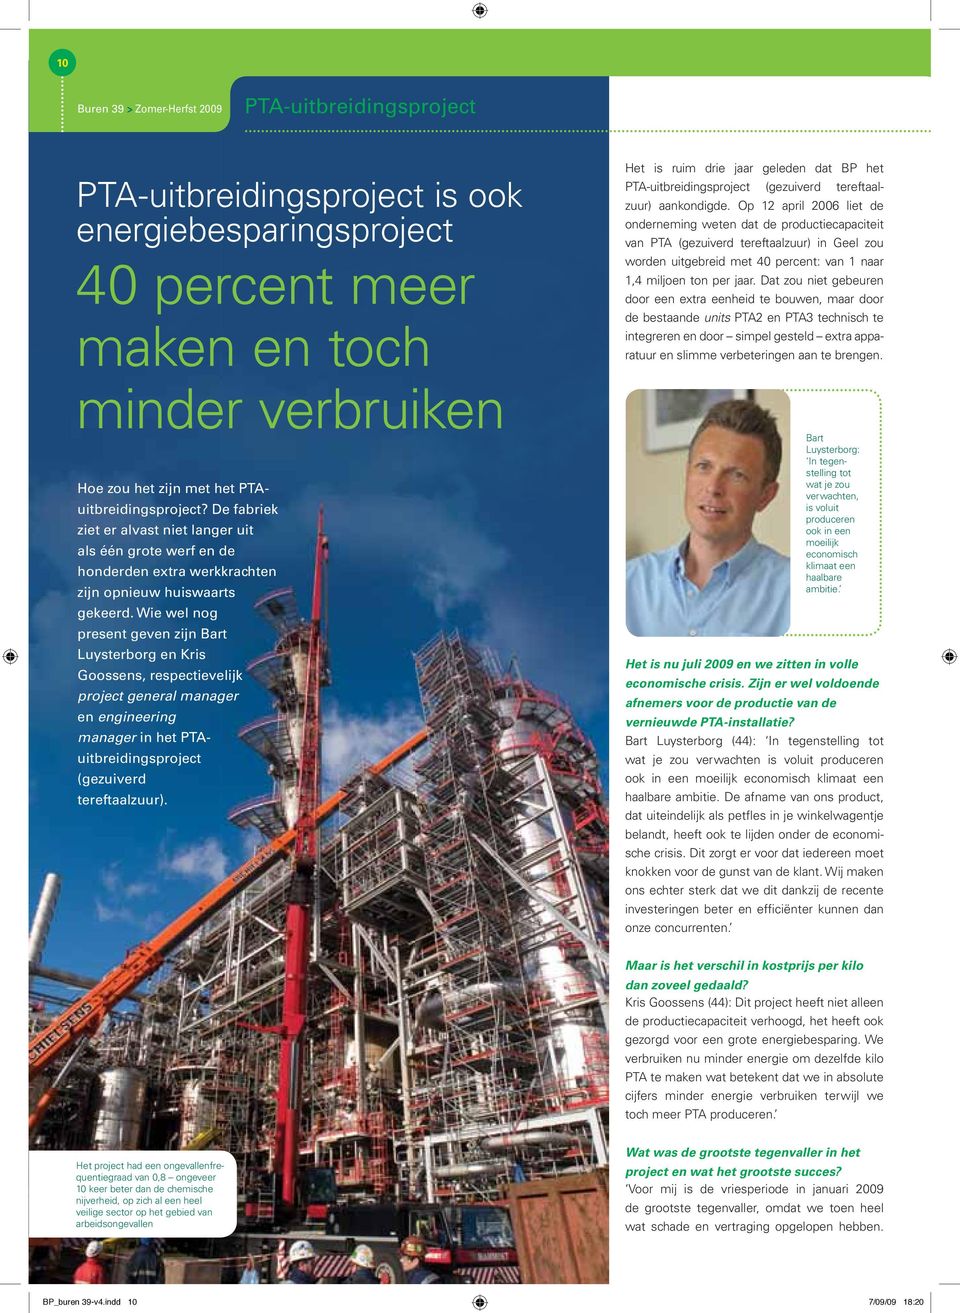 Wie wel nog present geven zijn Bart Luysterborg en Kris Goossens, respectievelijk project general manager en engineering manager in het PTAuitbreidingsproject (gezuiverd tereftaalzuur).